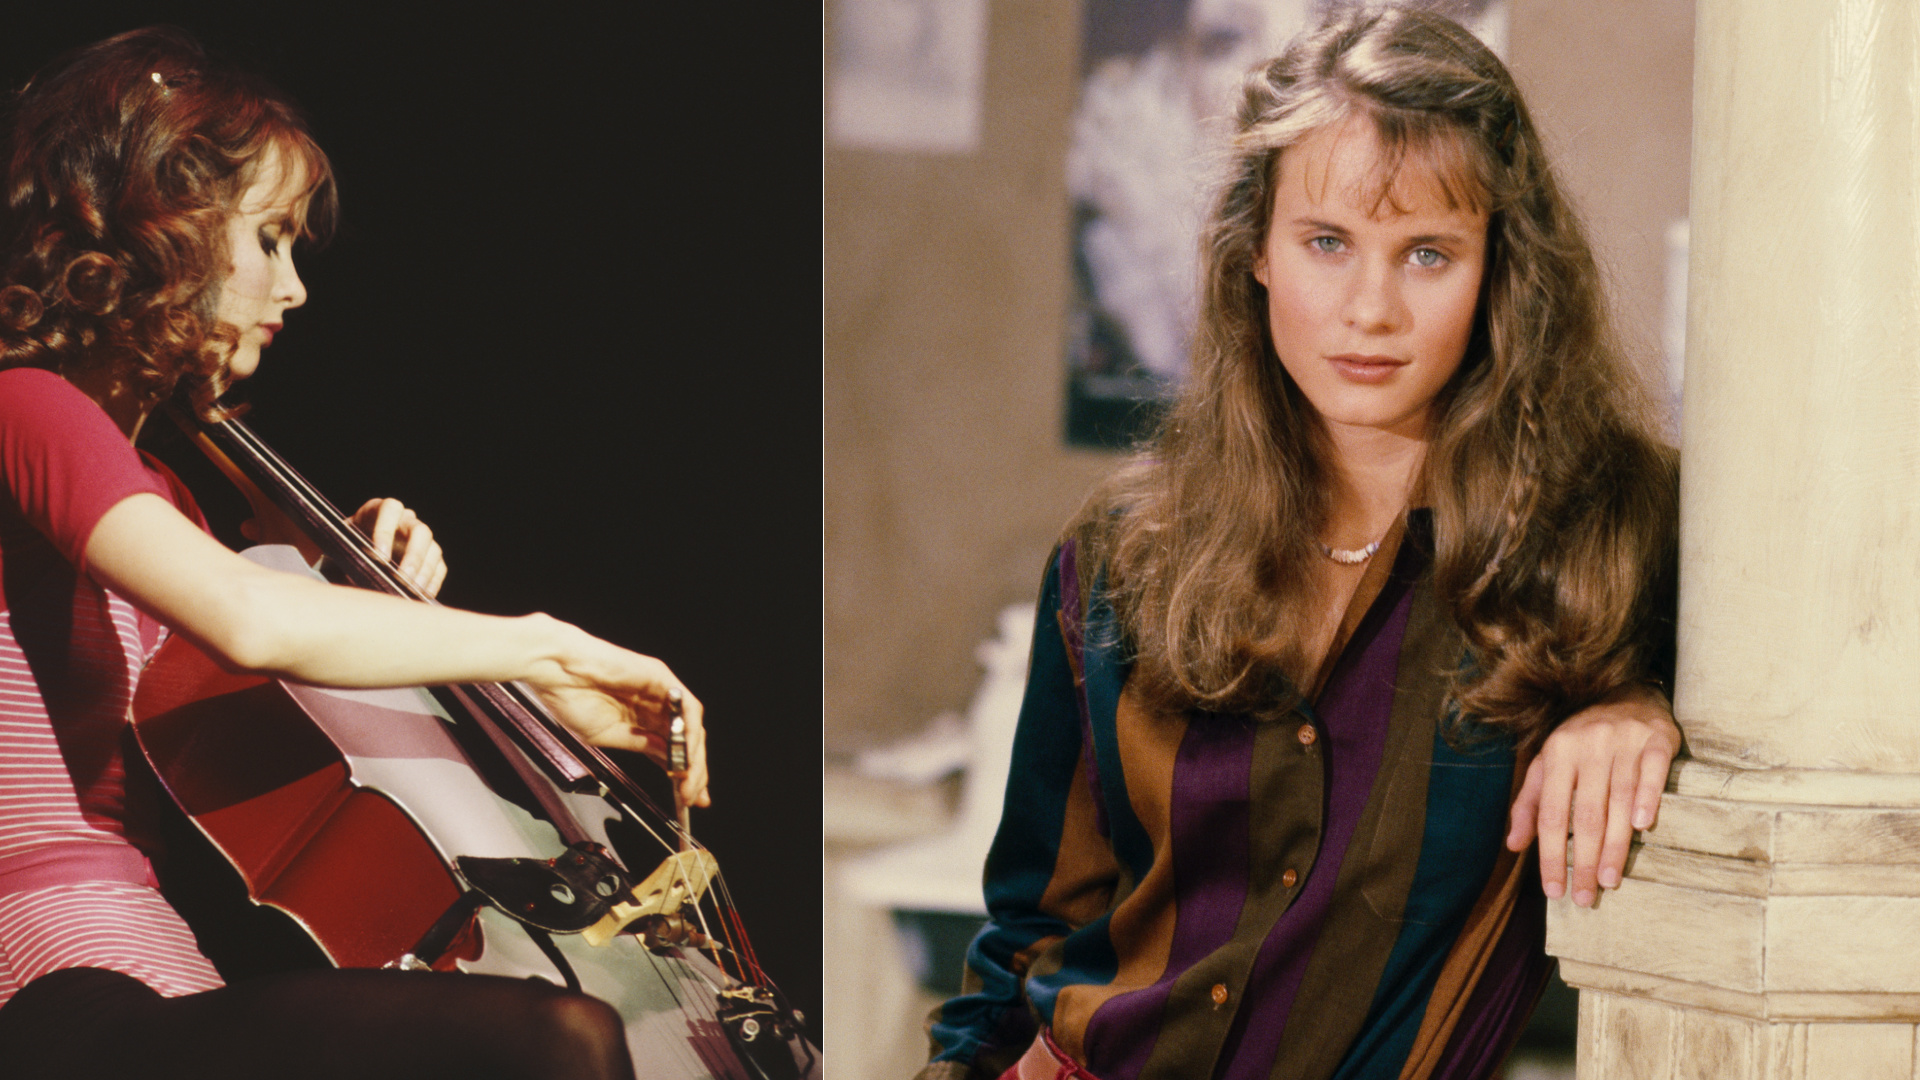 <p>Lori Singer était violoncelliste comme son personnage, Julie. Elle a participé aux deux premières saisons de 'Fame', mais a quitté la série après avoir décroché un rôle aux côtés de Kevin Bacon dans 'Footloose' (1984). Après avoir accédé à la notoriété, elle est apparue dans plusieurs autres films populaires. Elle a ensuite décidé de s'éloigner des feux de la rampe en 1997.</p> <p>Lire aussi : <a href="https://www.msn.com/fr-be/divertissement/photos/ces-ic%C3%B4nes-des-ann%C3%A9es-80-qui-sont-mortes-trop-t%C3%B4t/ss-AAKOnIP?ocid=mailsignout&li=BBqiJuZ" rel="noopener"><strong>Ces icônes de la musique des années 80 qui sont mortes trop tôt</strong></a></p>